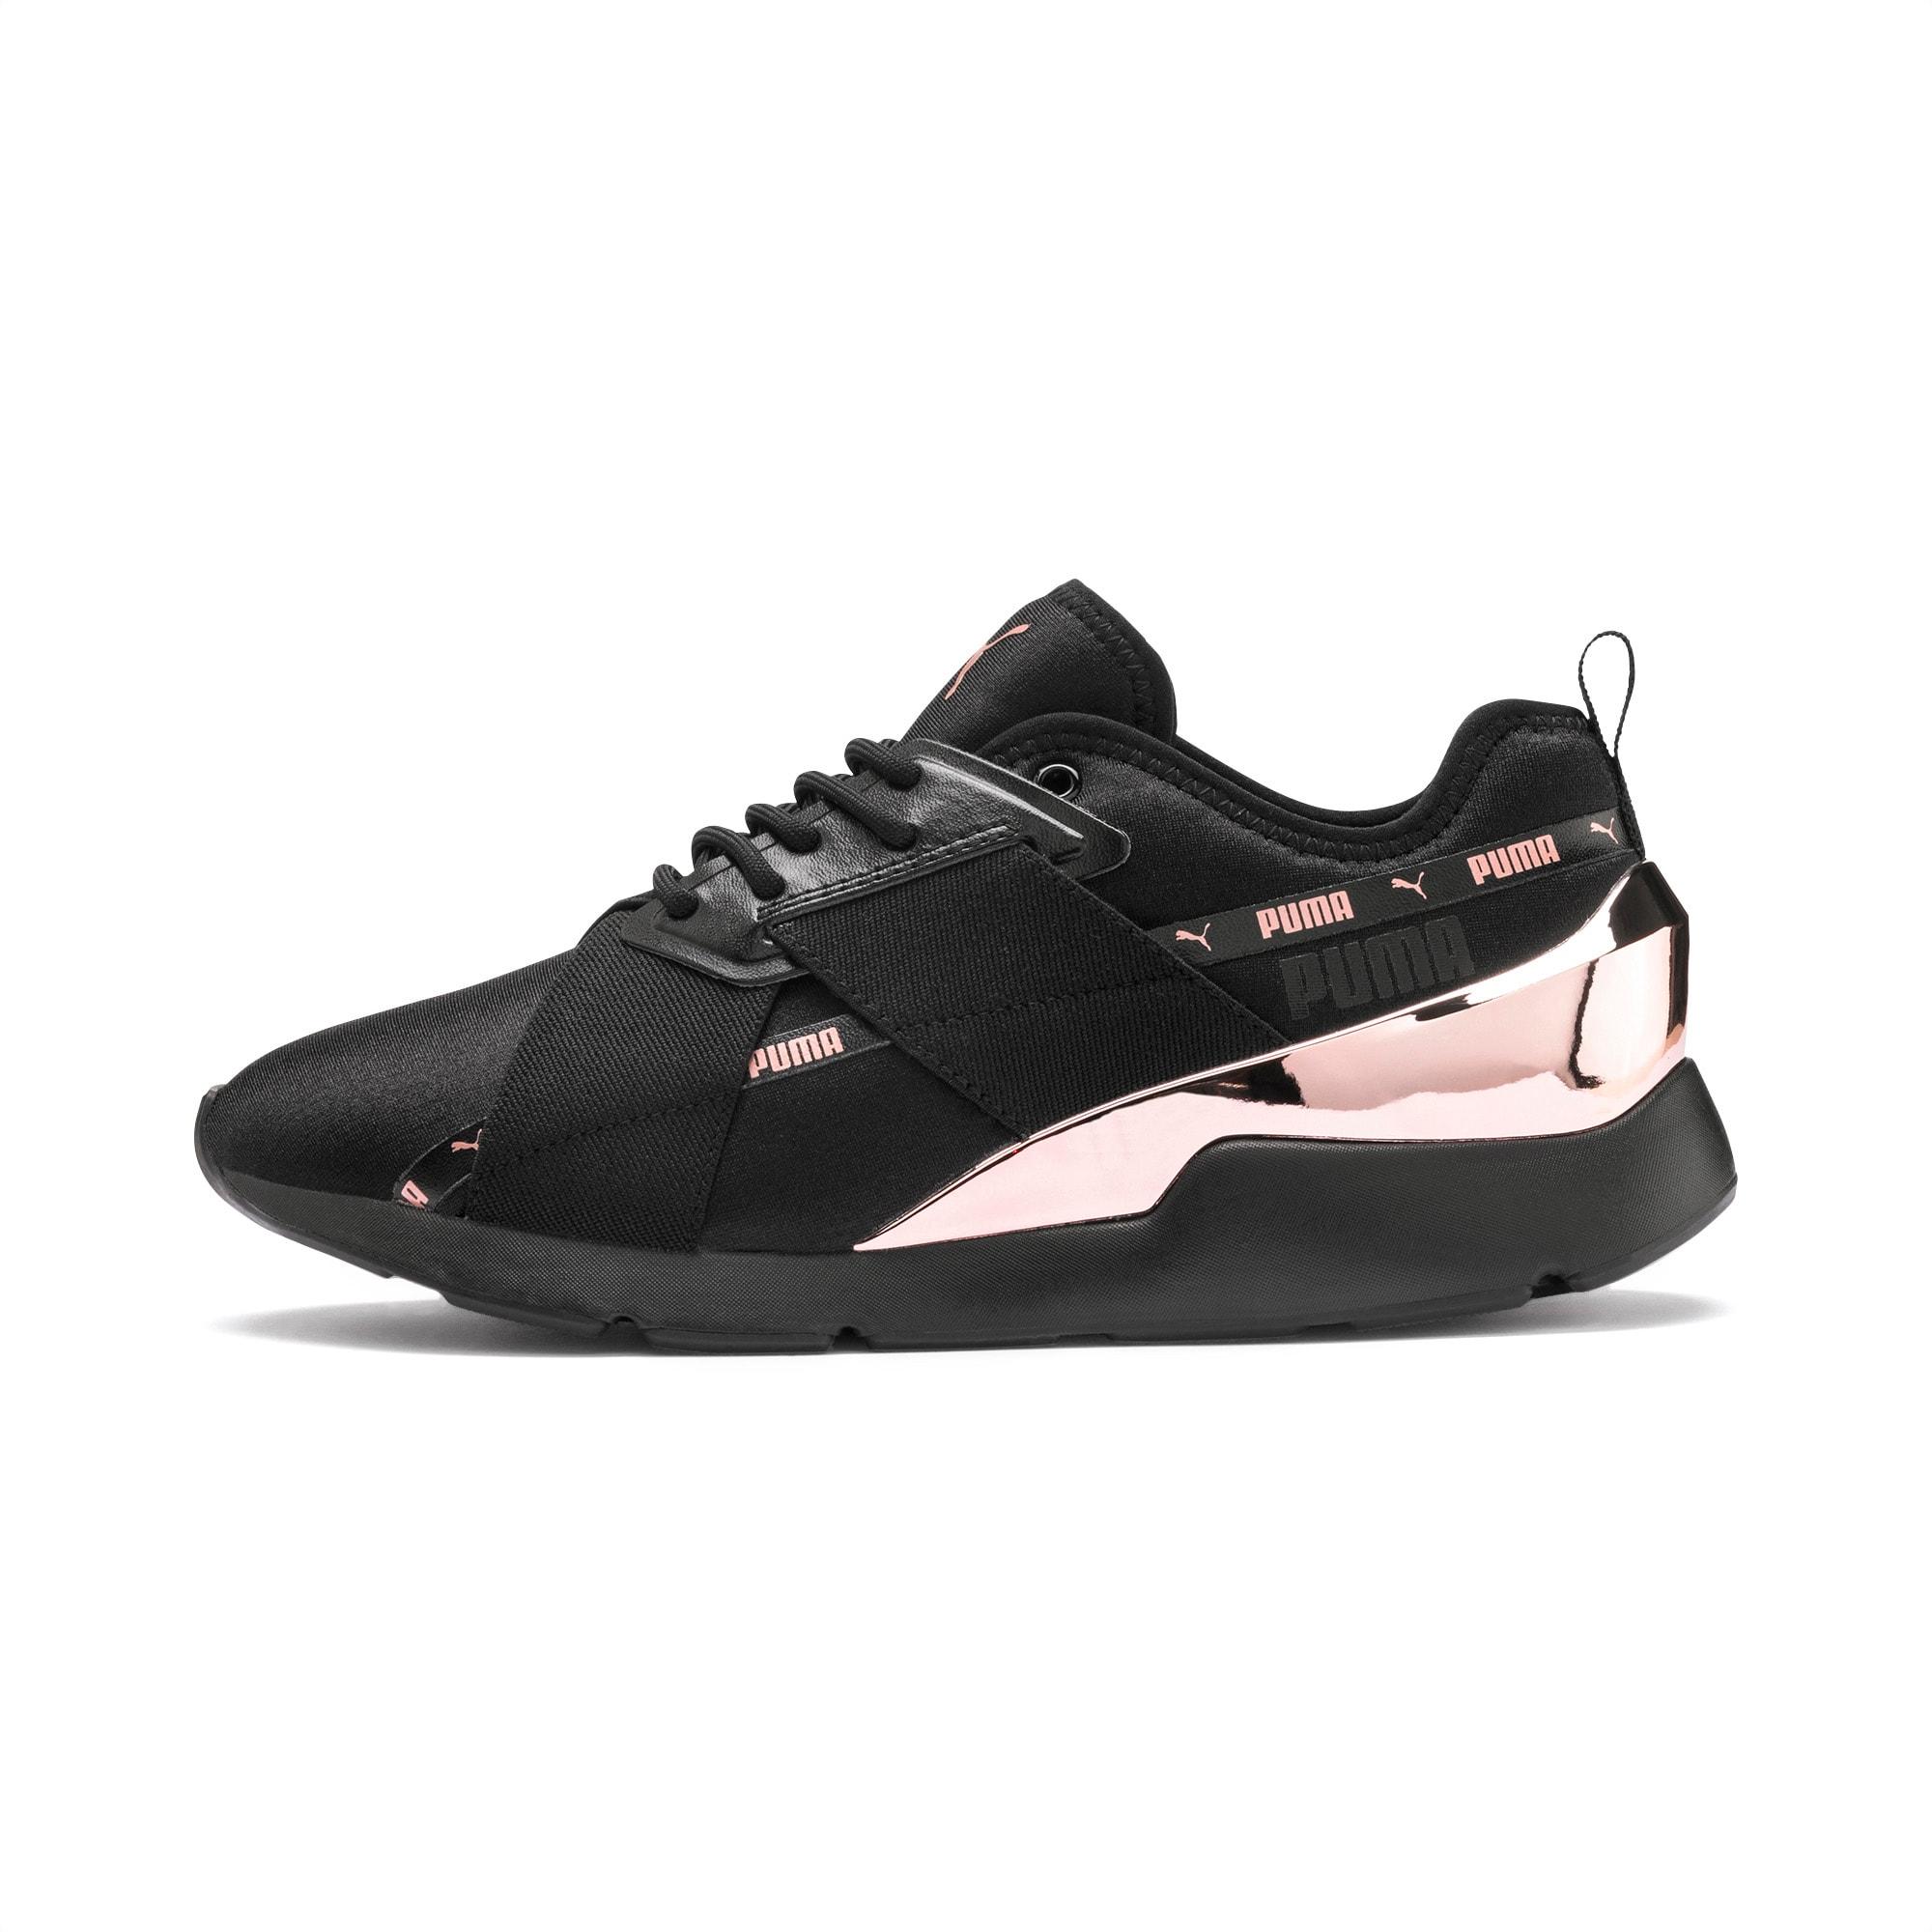 PUMA Neoprene Muse X-2 Metallic Women's Sneakers in 01 (Black) - Lyst